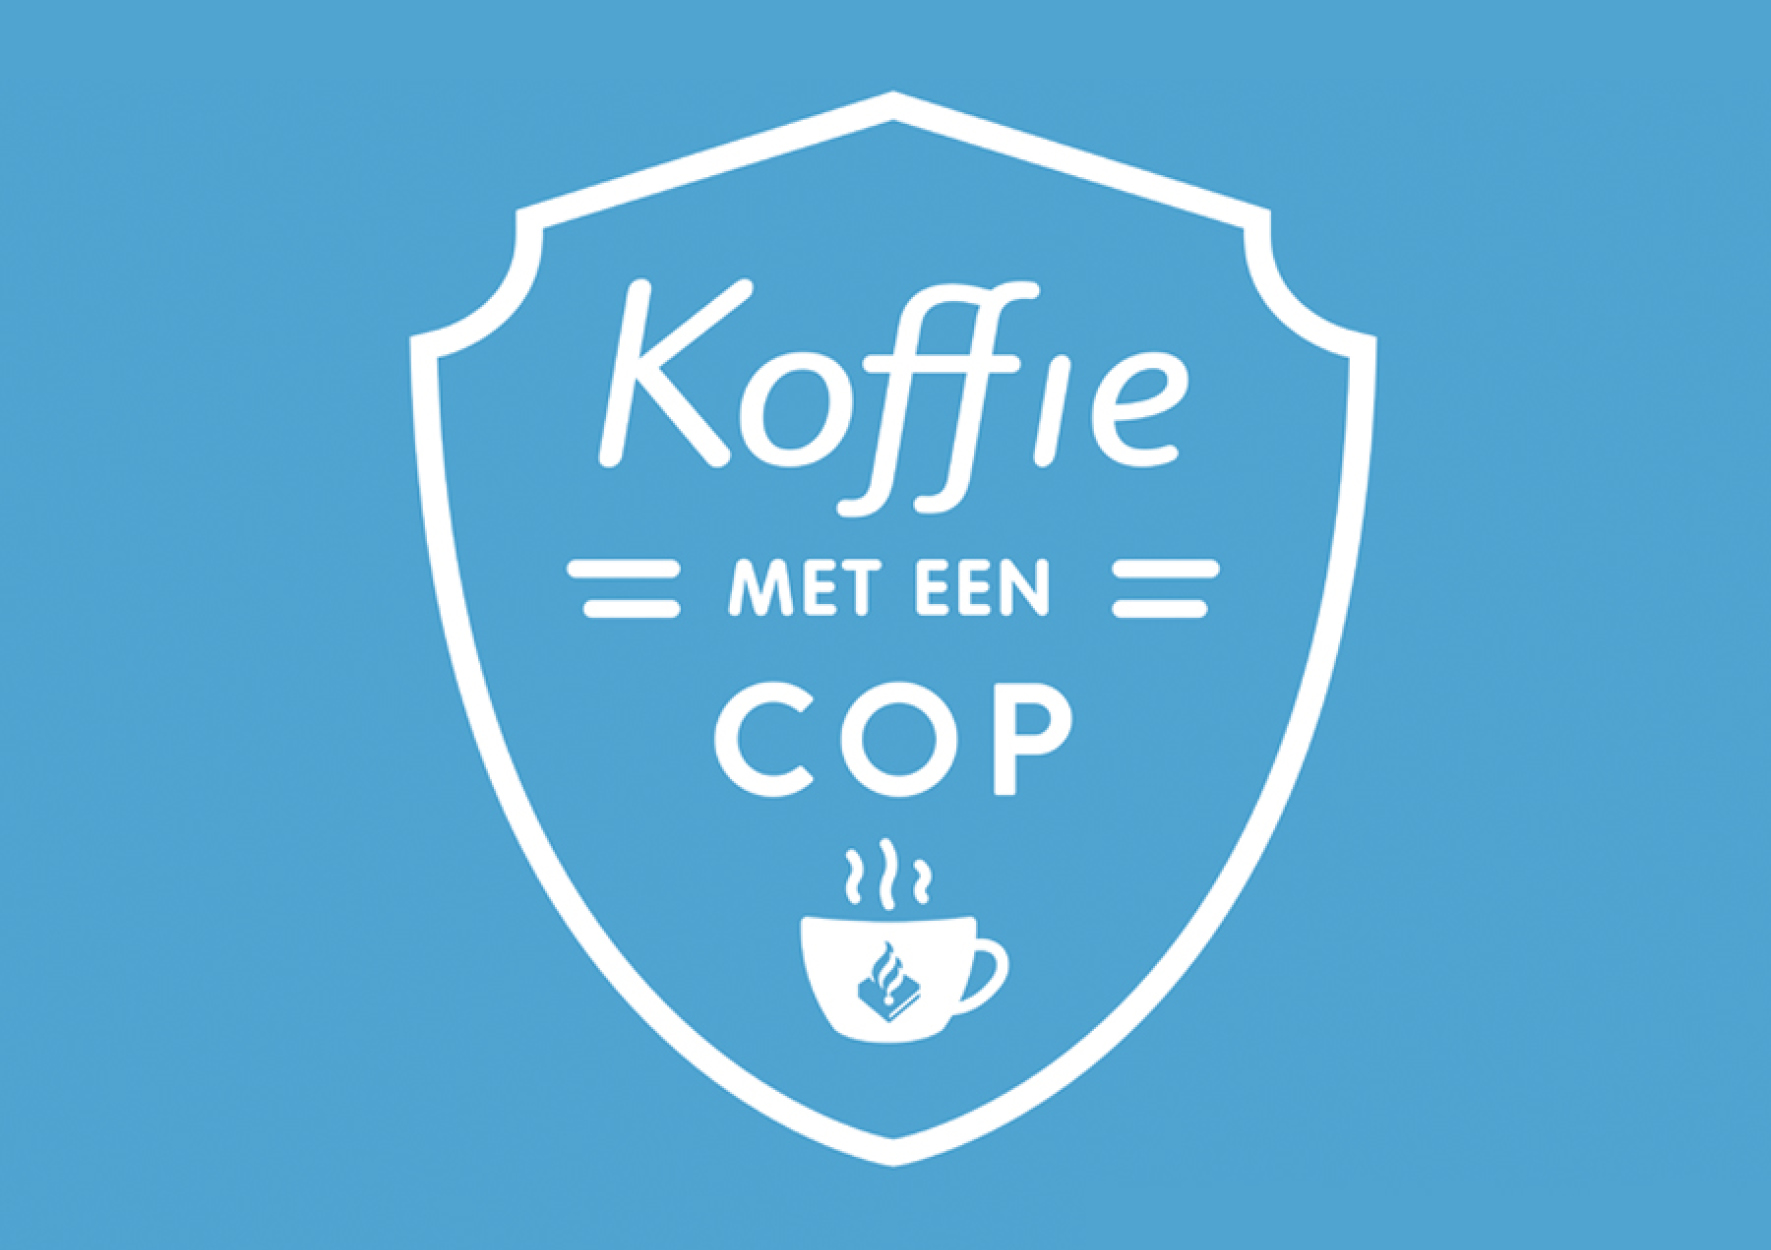 Koffieochtend: Koffie met een cop